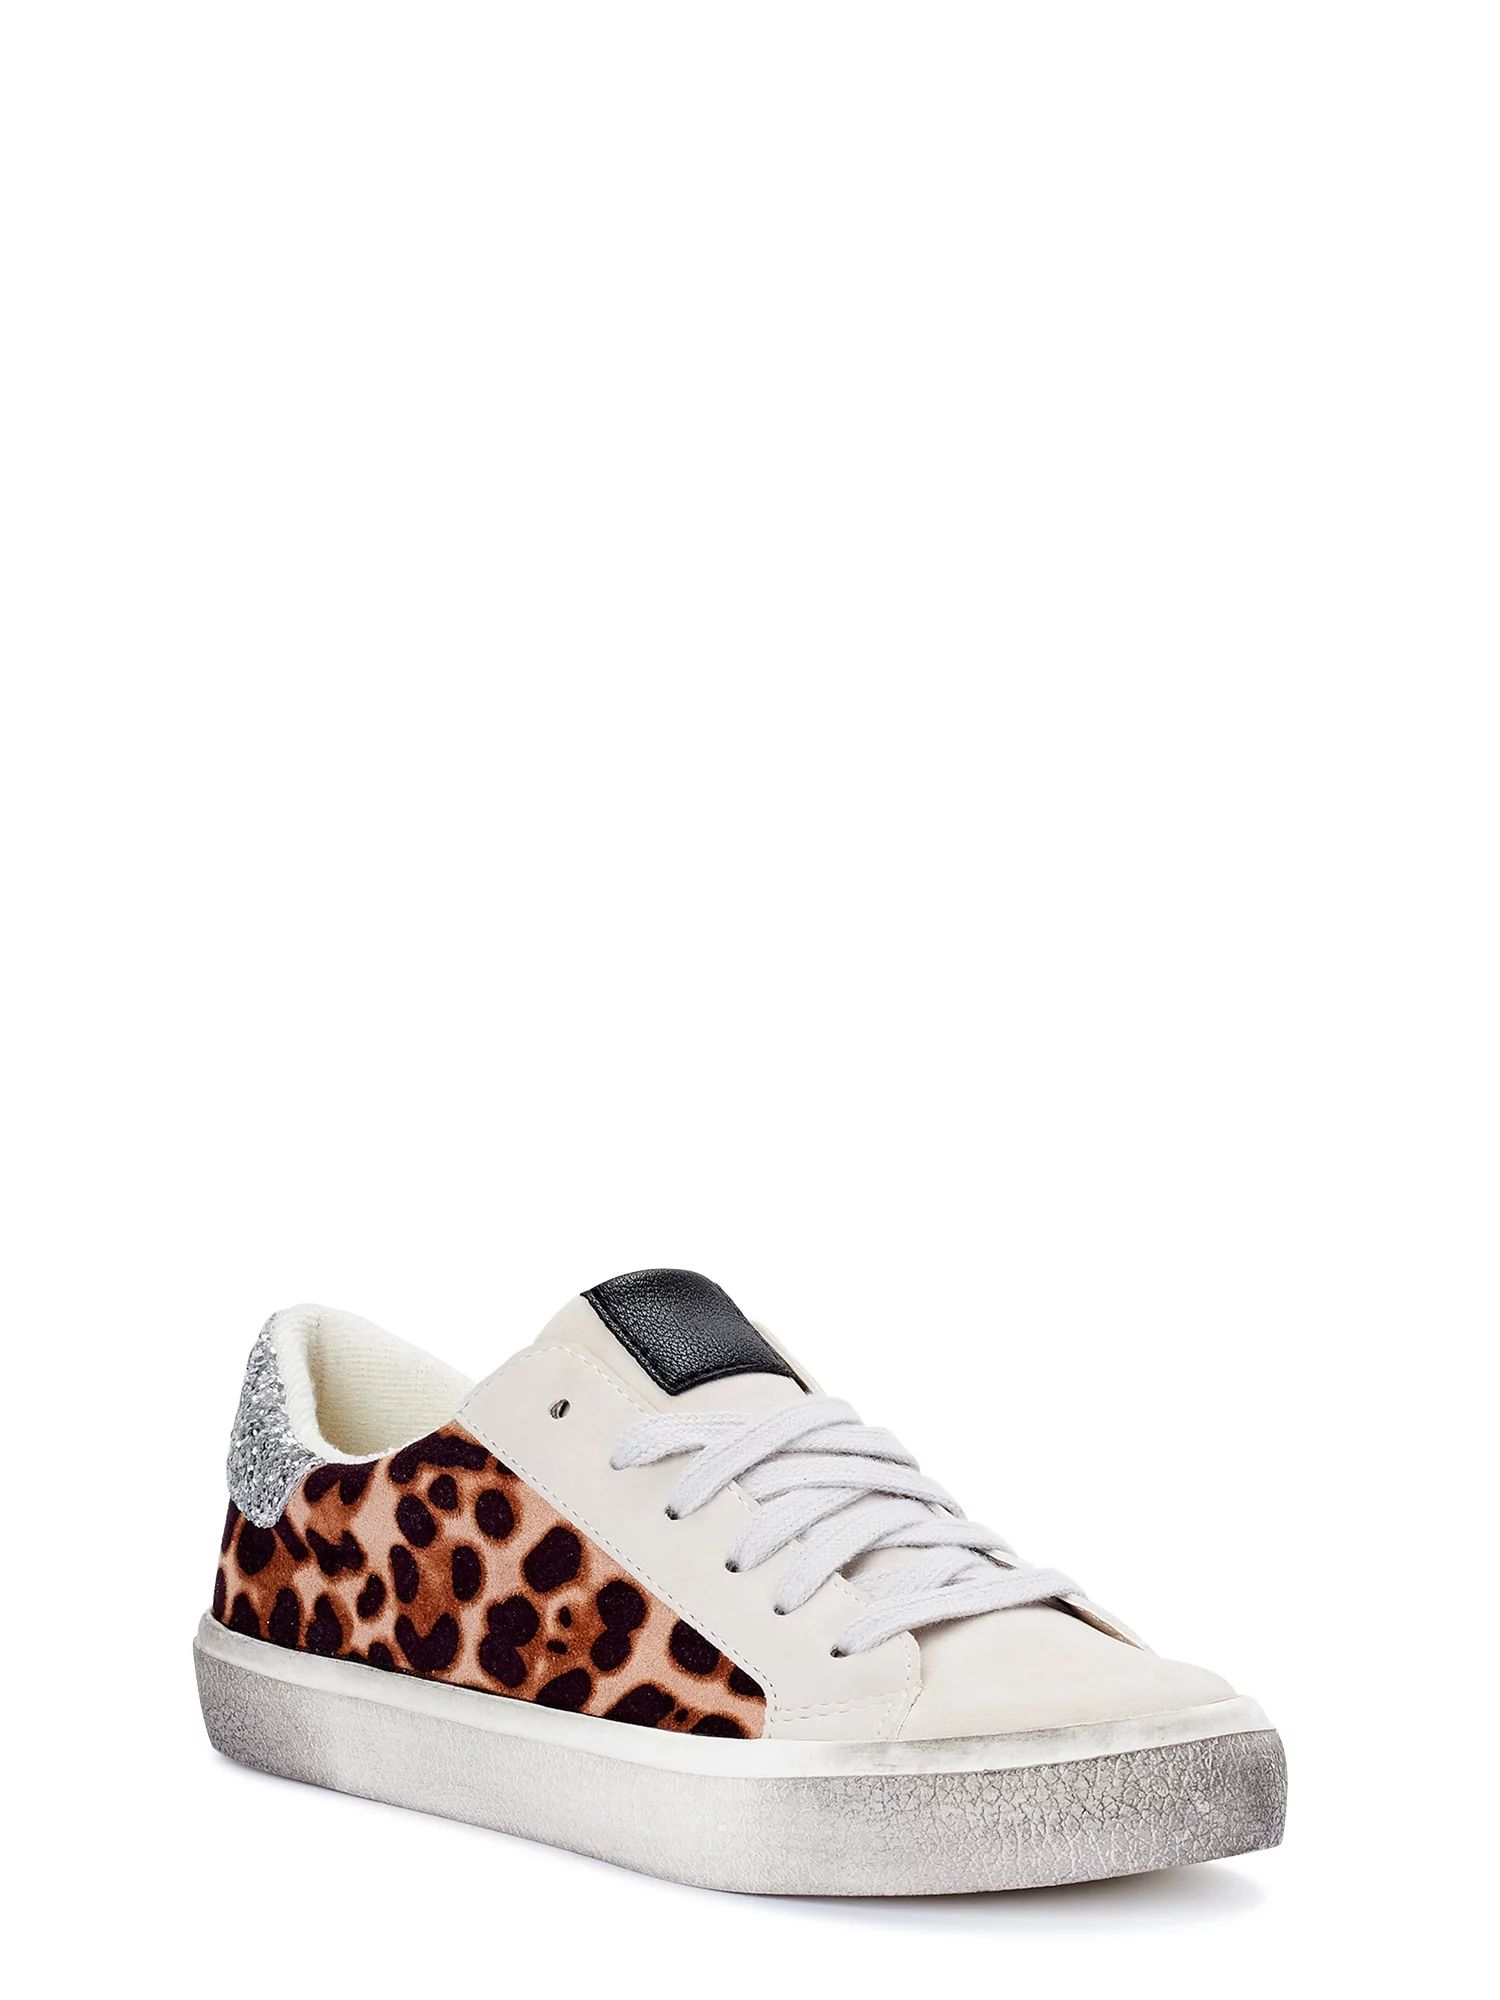 Scoop Women's Distressed Leopard Print Sneaker - Walmart.com | Walmart (US)